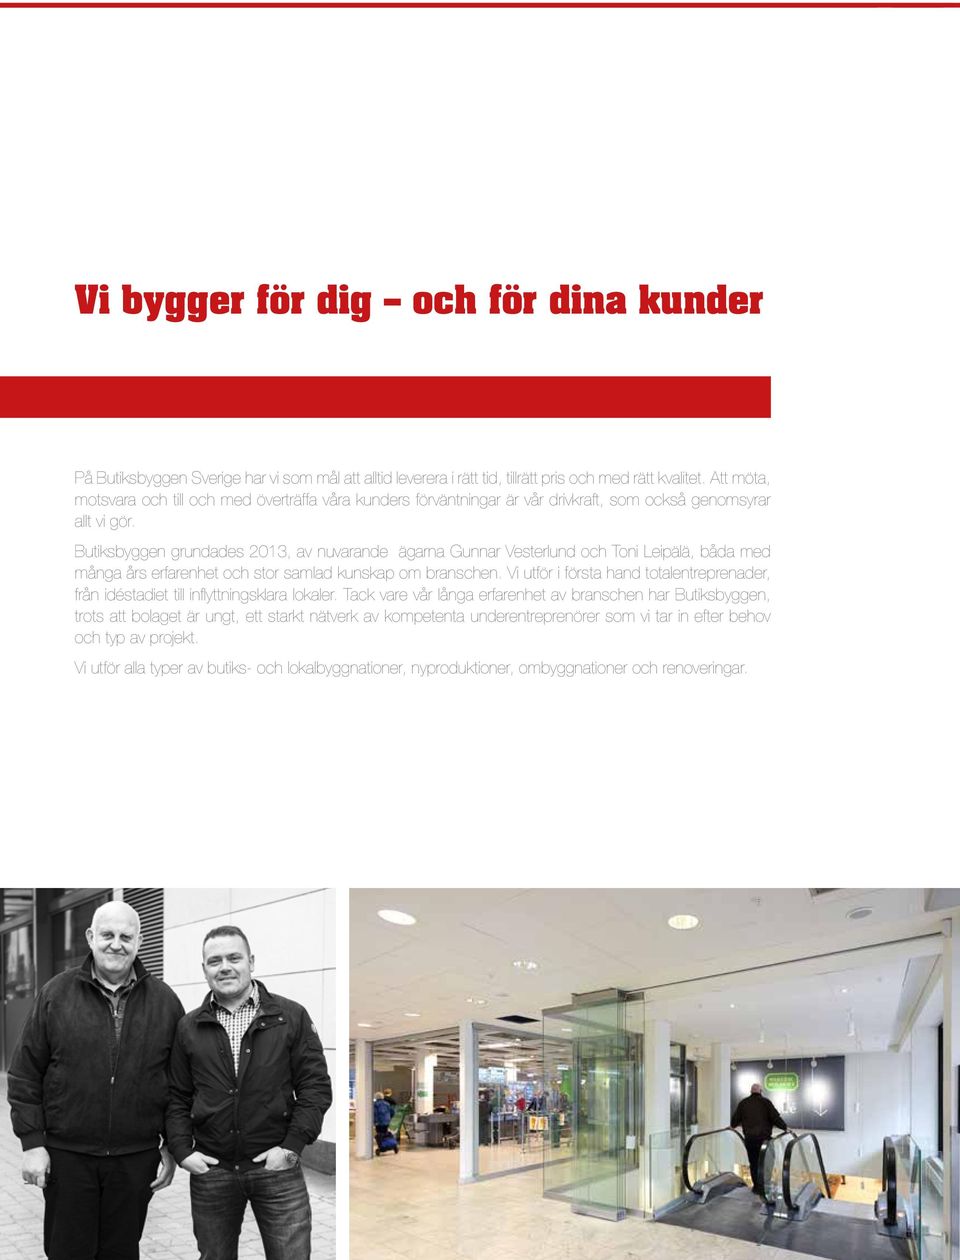 Butiksbyggen grundades 2013, av nuvarande ägarna Gunnar Vesterlund och Toni Leipälä, båda med många års erfarenhet och stor samlad kunskap om branschen.